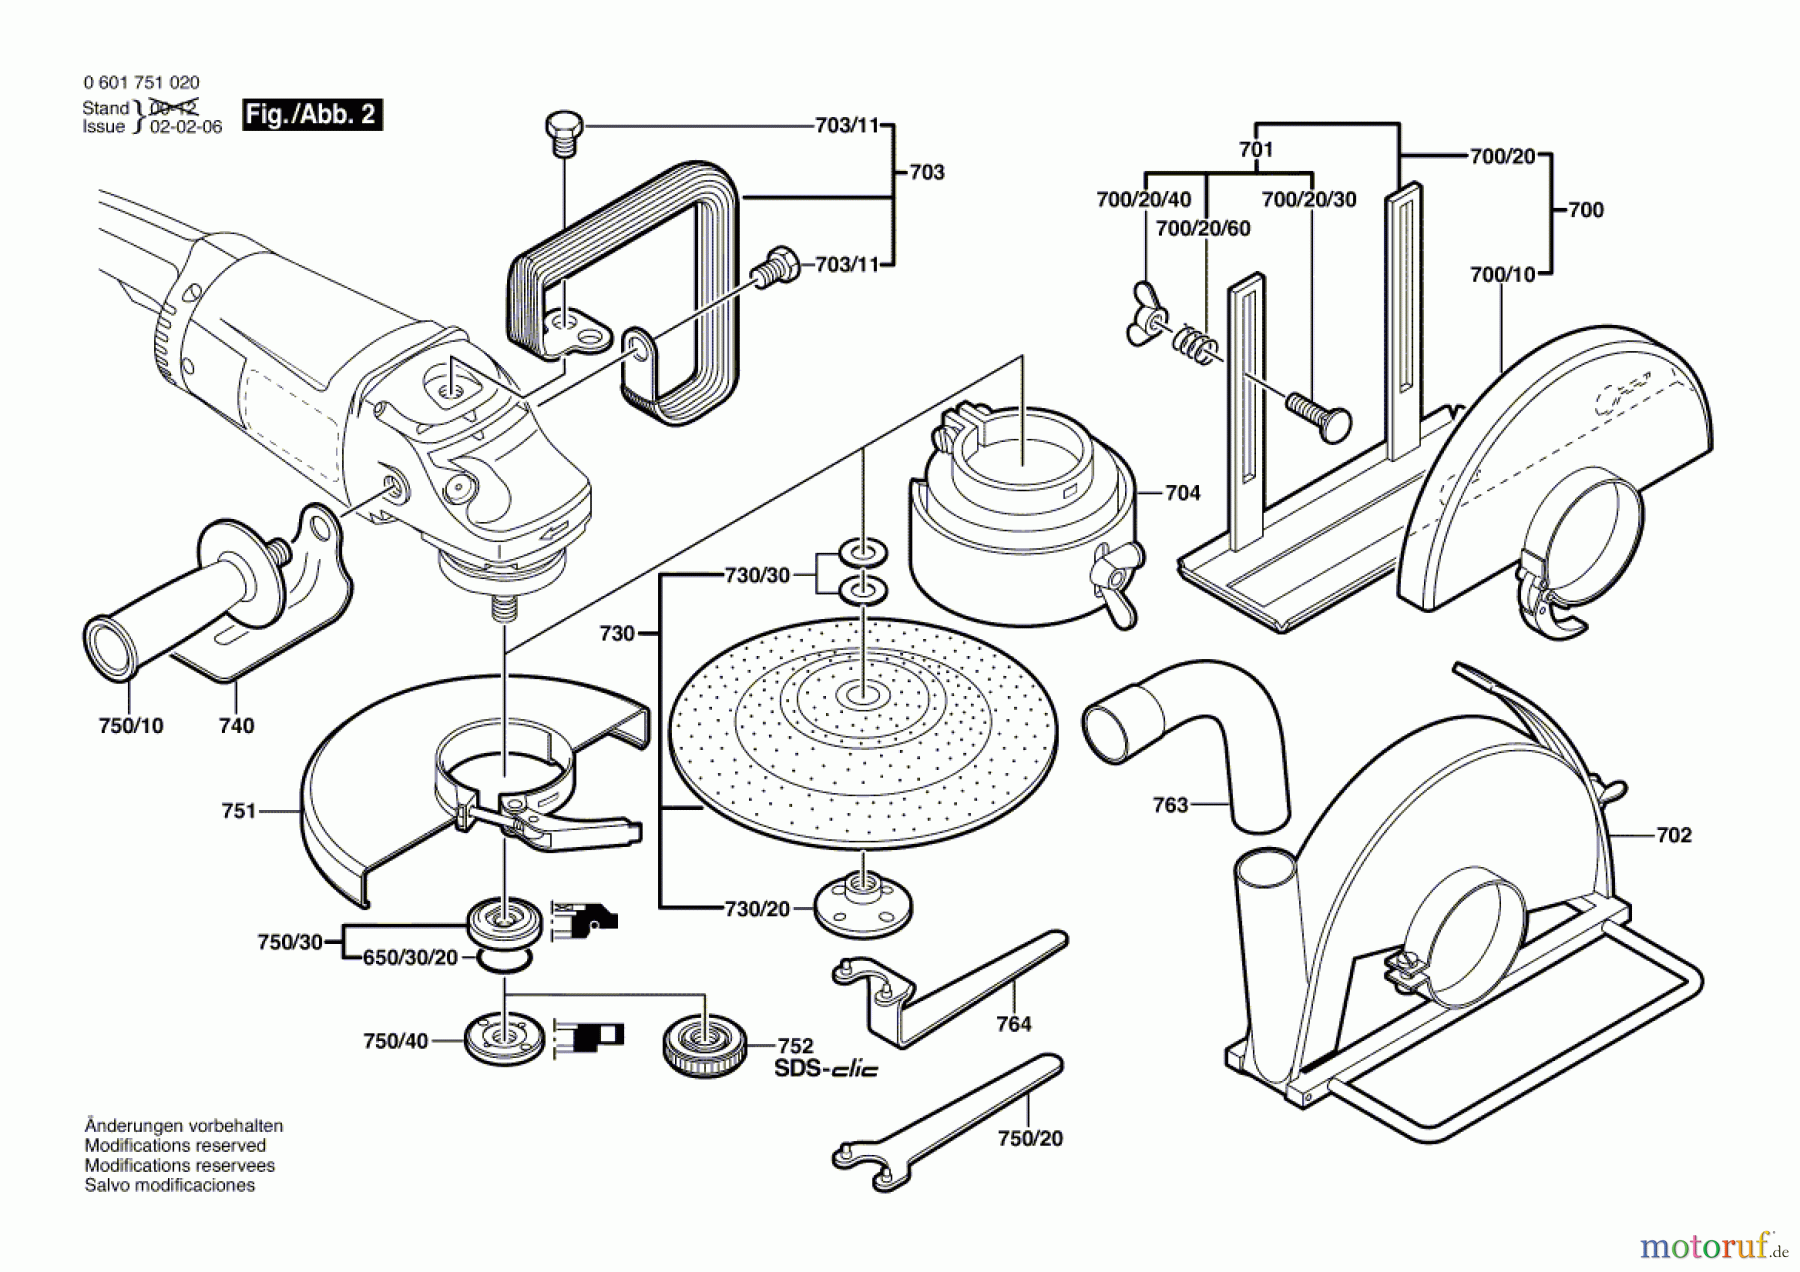  Bosch Werkzeug Winkelschleifer GWS 20-180 Seite 2